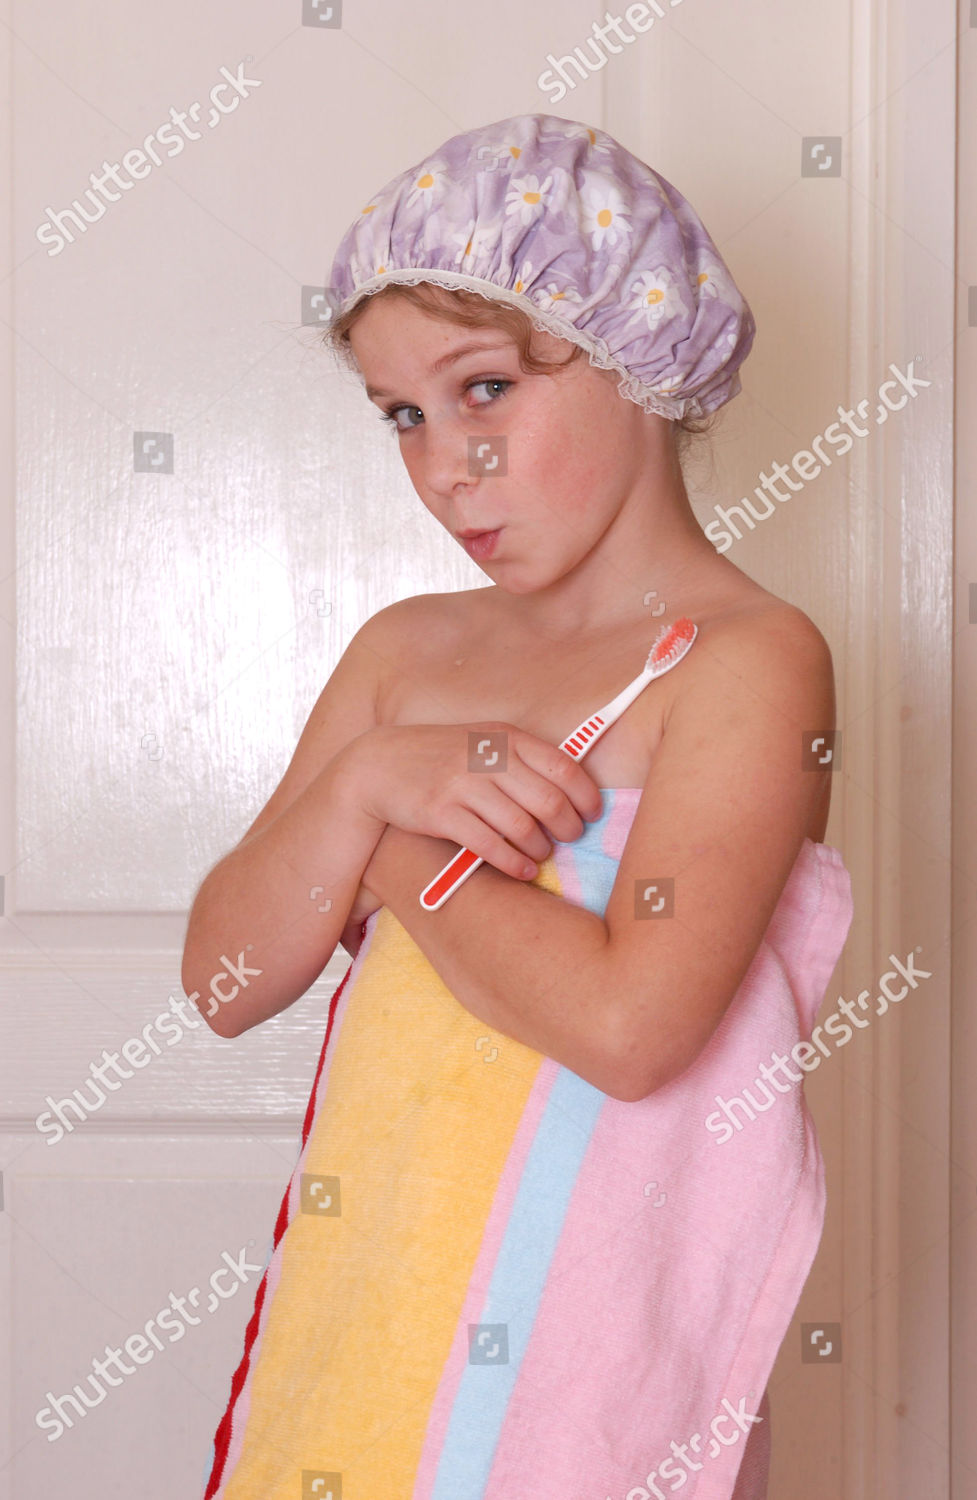 shower cap girl